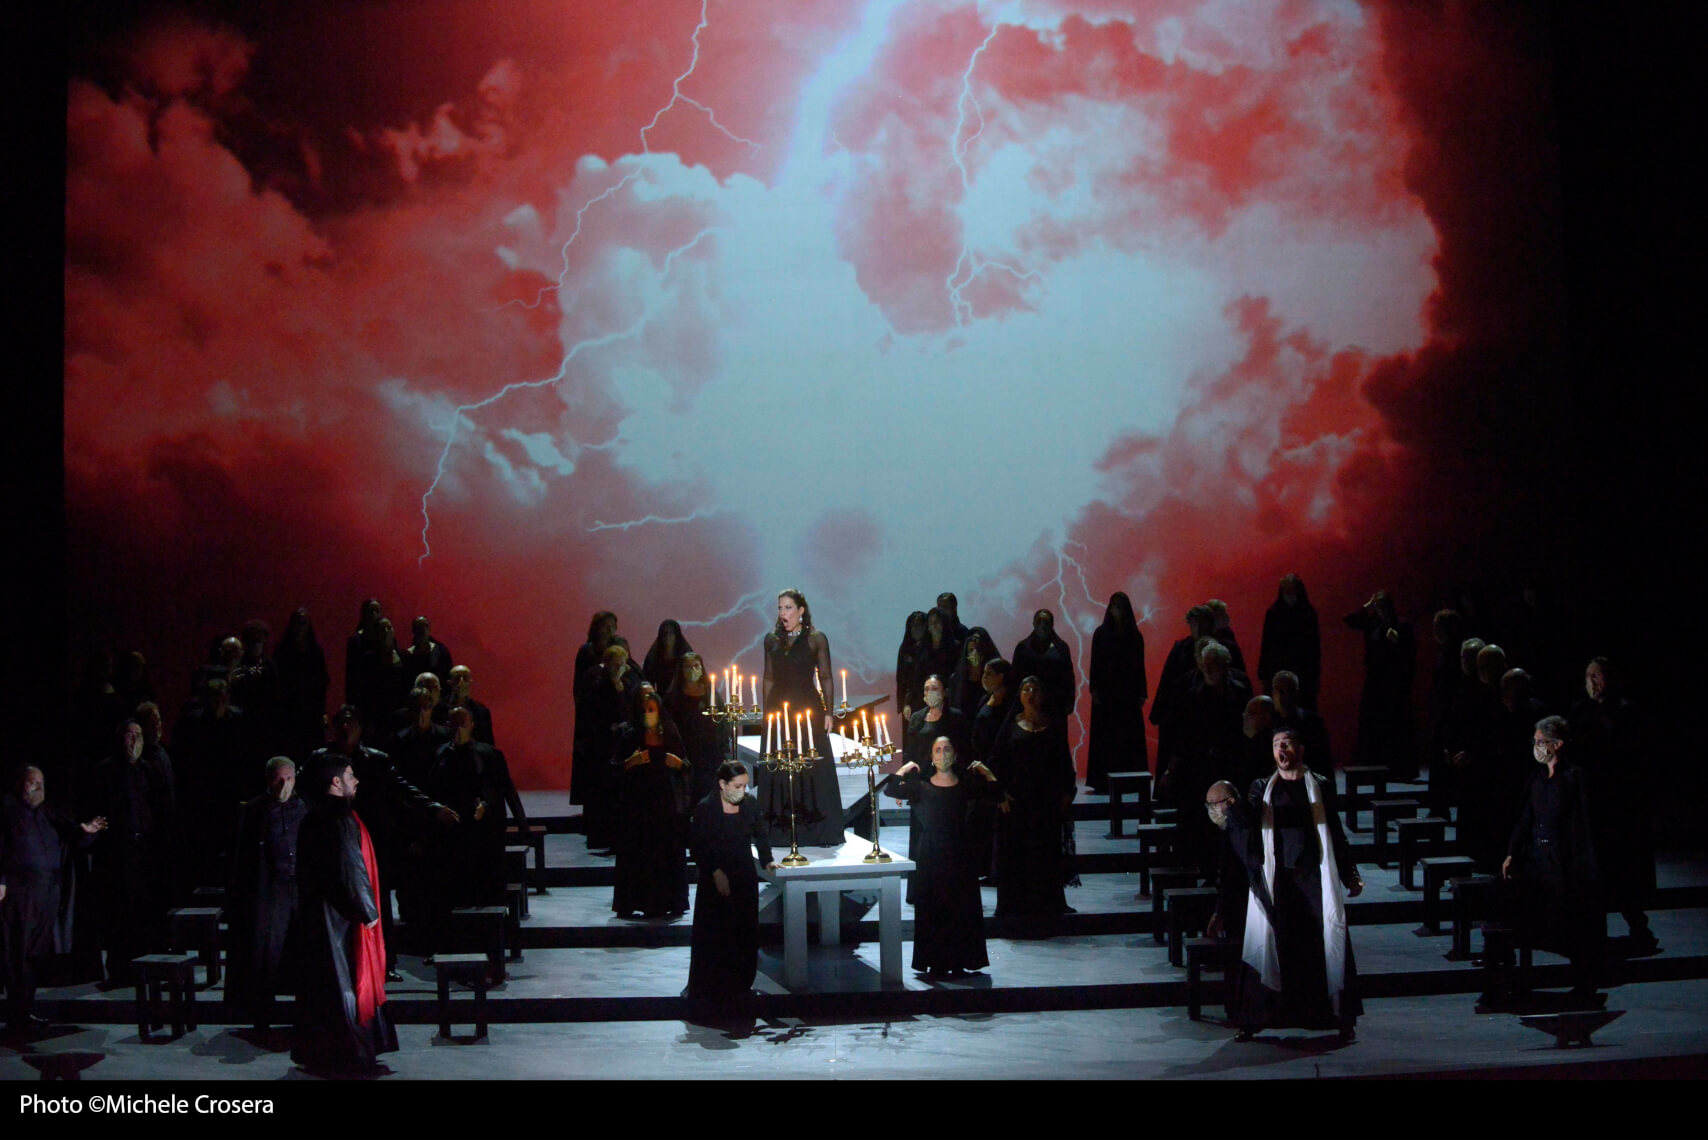 Una imagen de "Il trovatore" que se verá en Bilbao / Foto: Michele Crosera - Teatro La Fenice